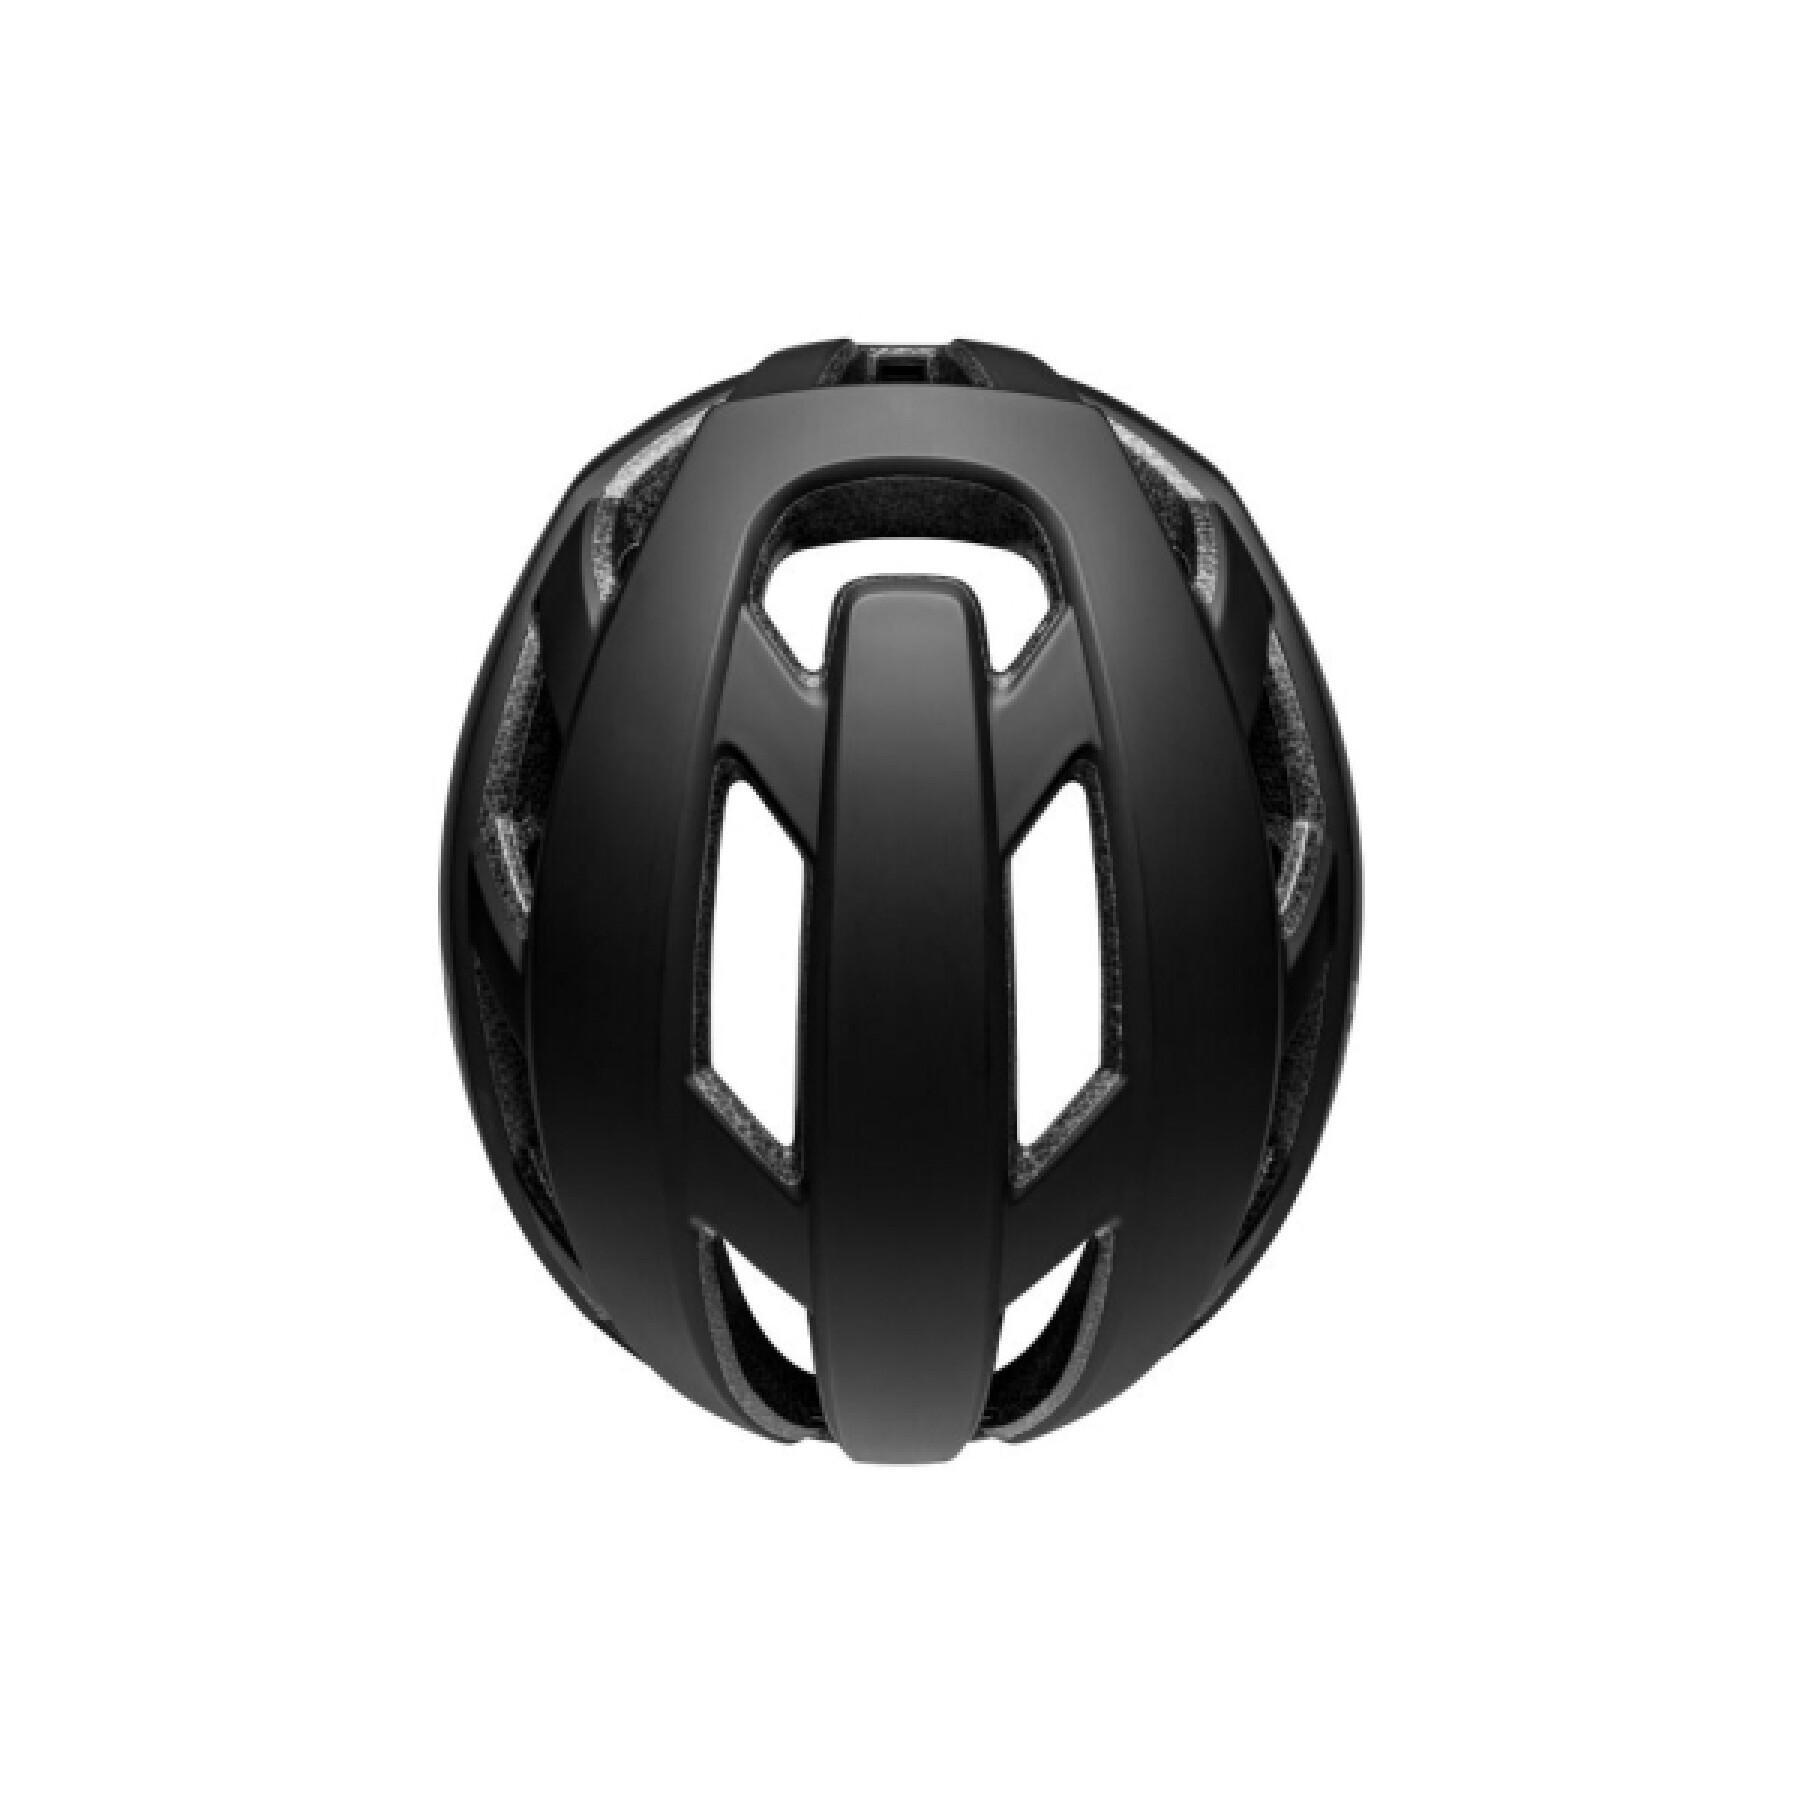 Led bike helmet Bell Falcon XR Mips